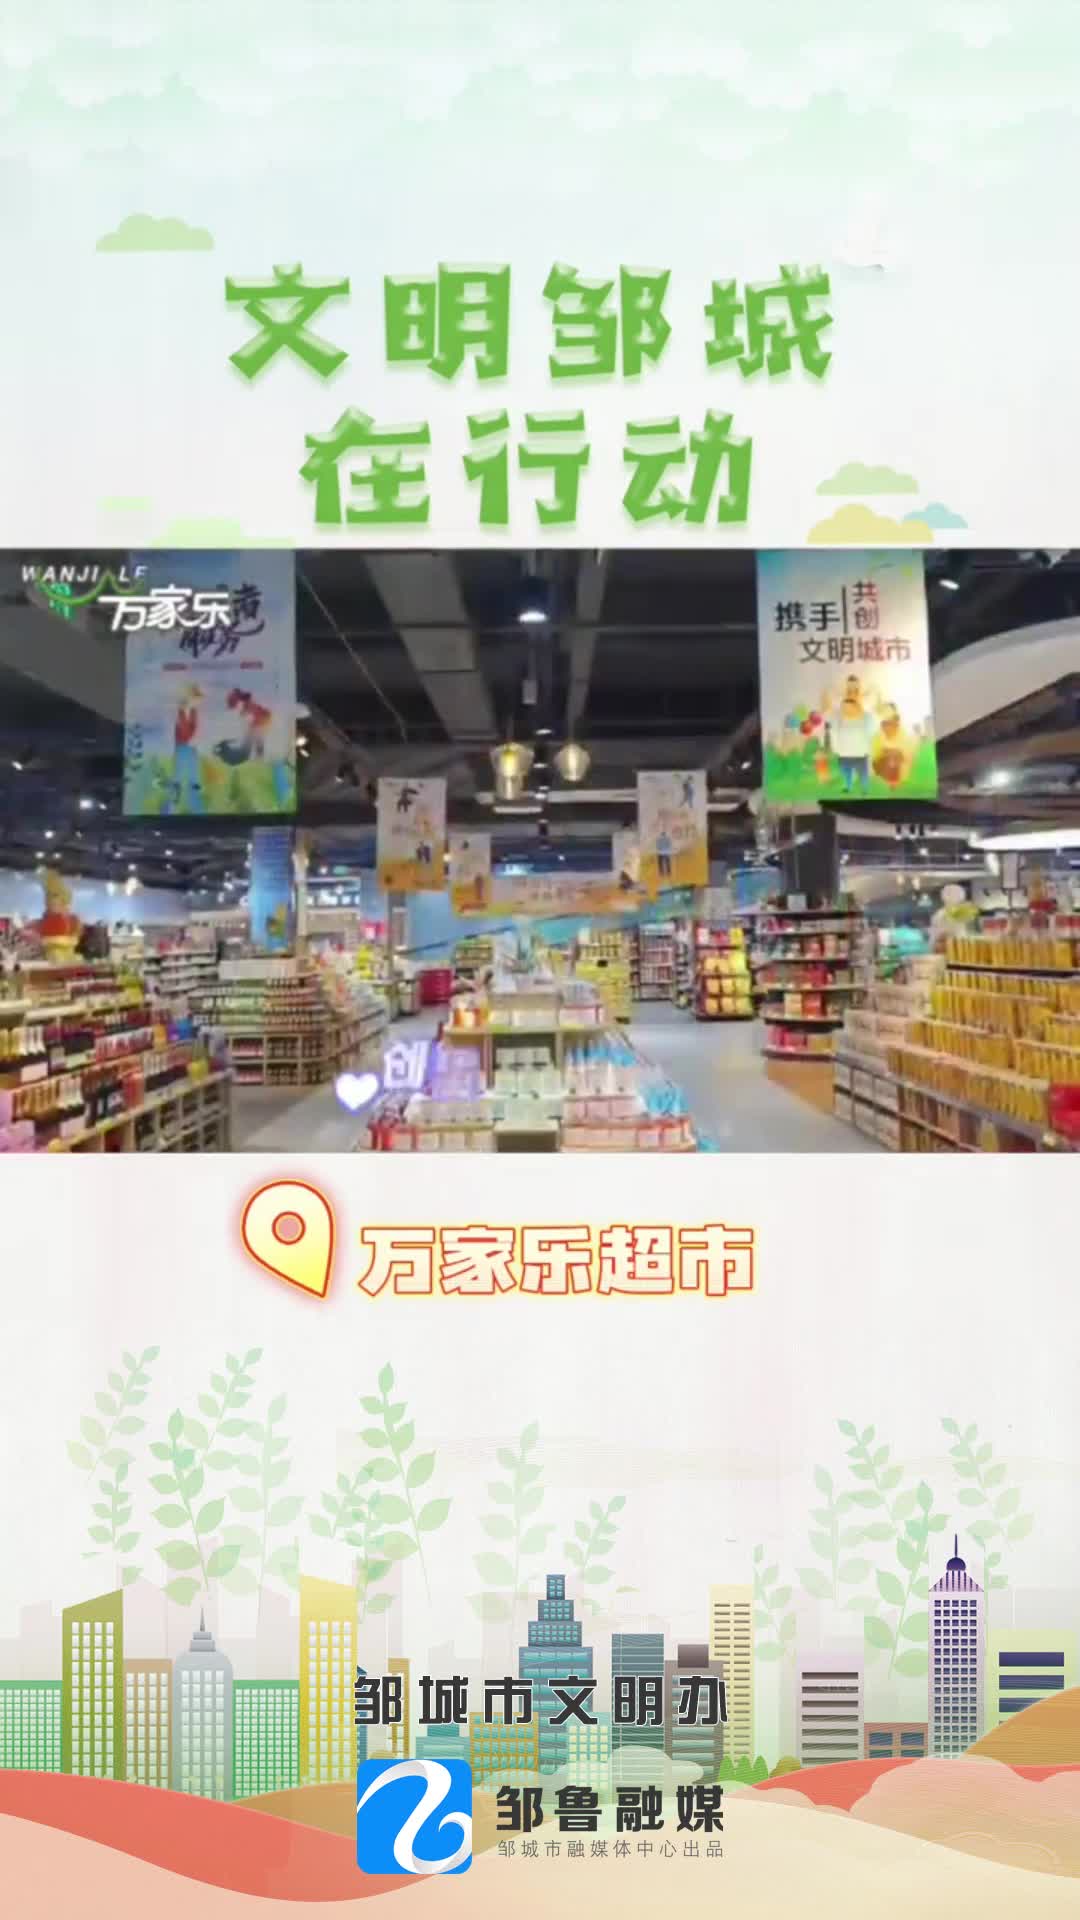 【邹视频·新闻】50秒 |文明邹城在行动—万家乐超市